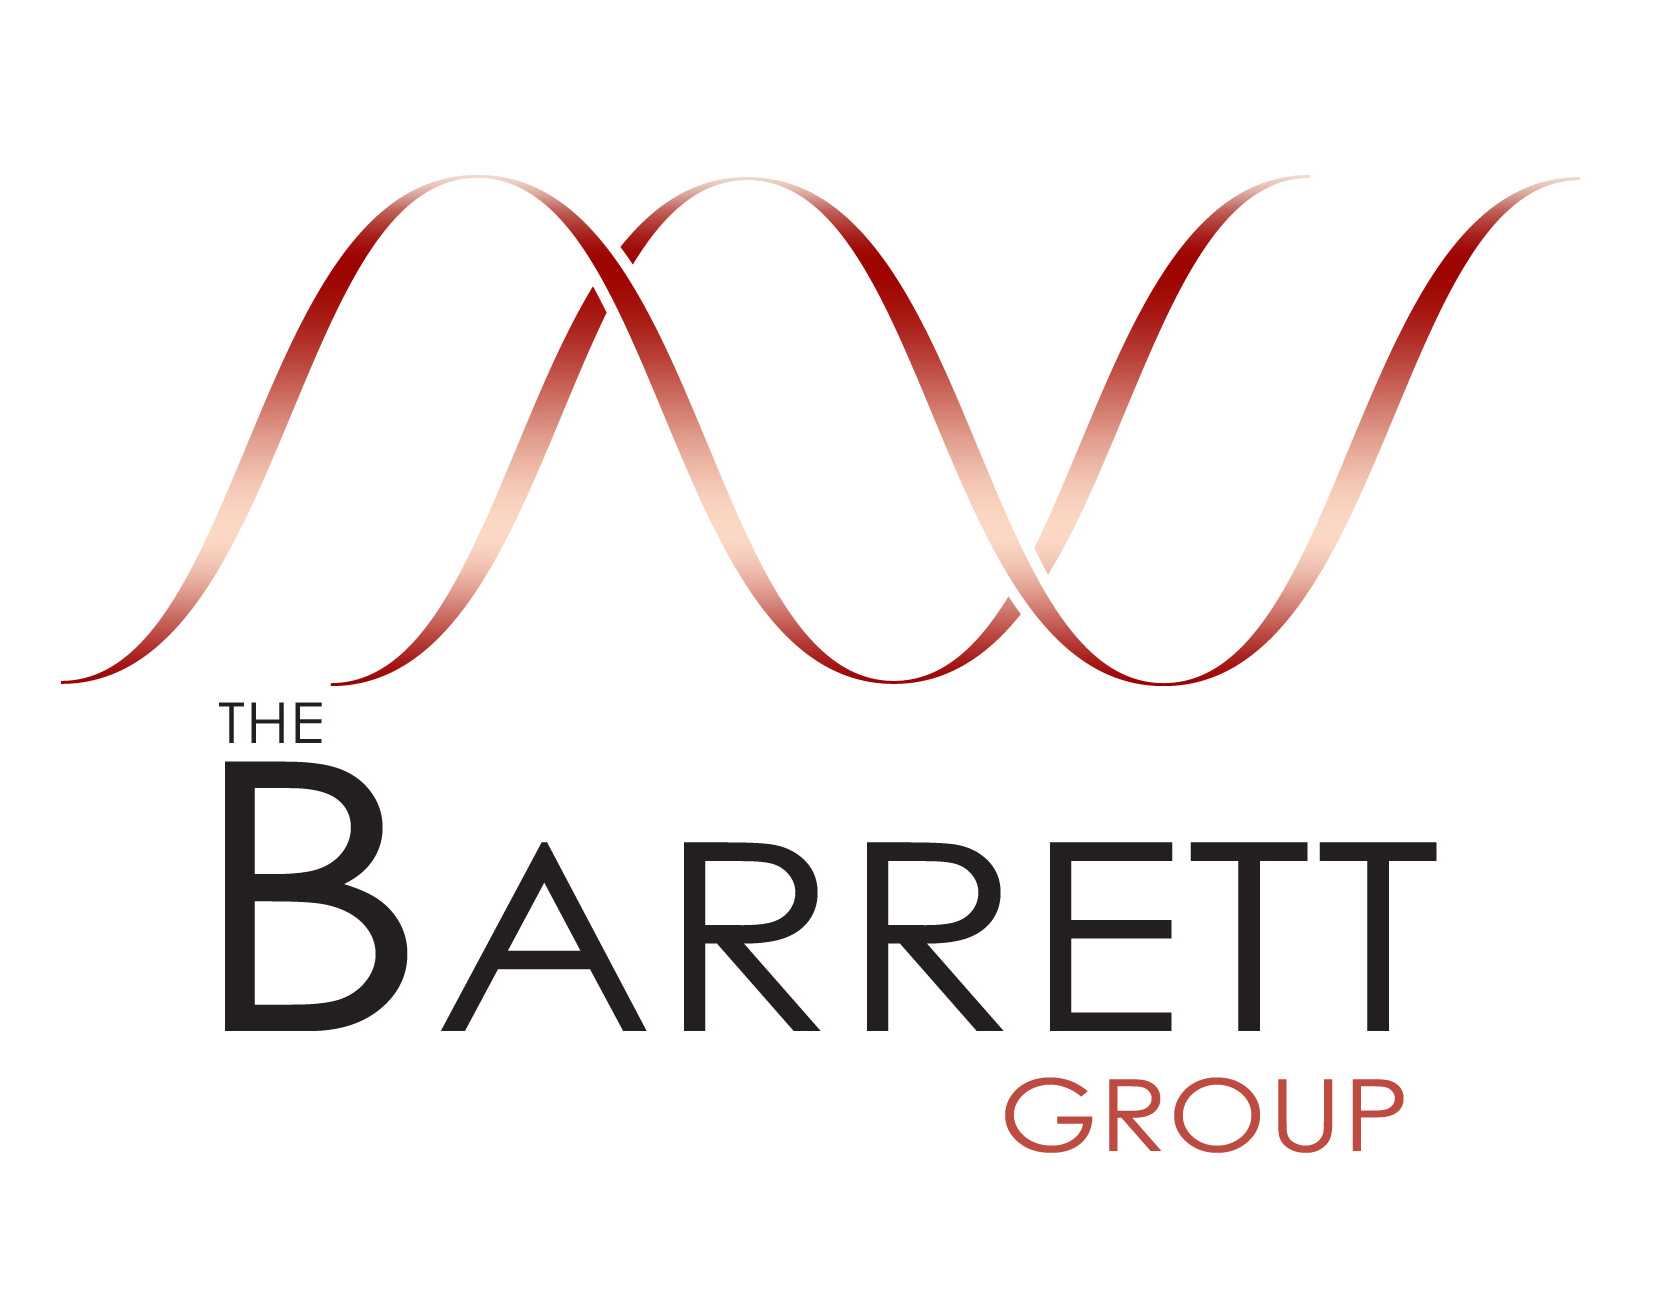 Barret Group_logo_final_high-res - Marion Engelke